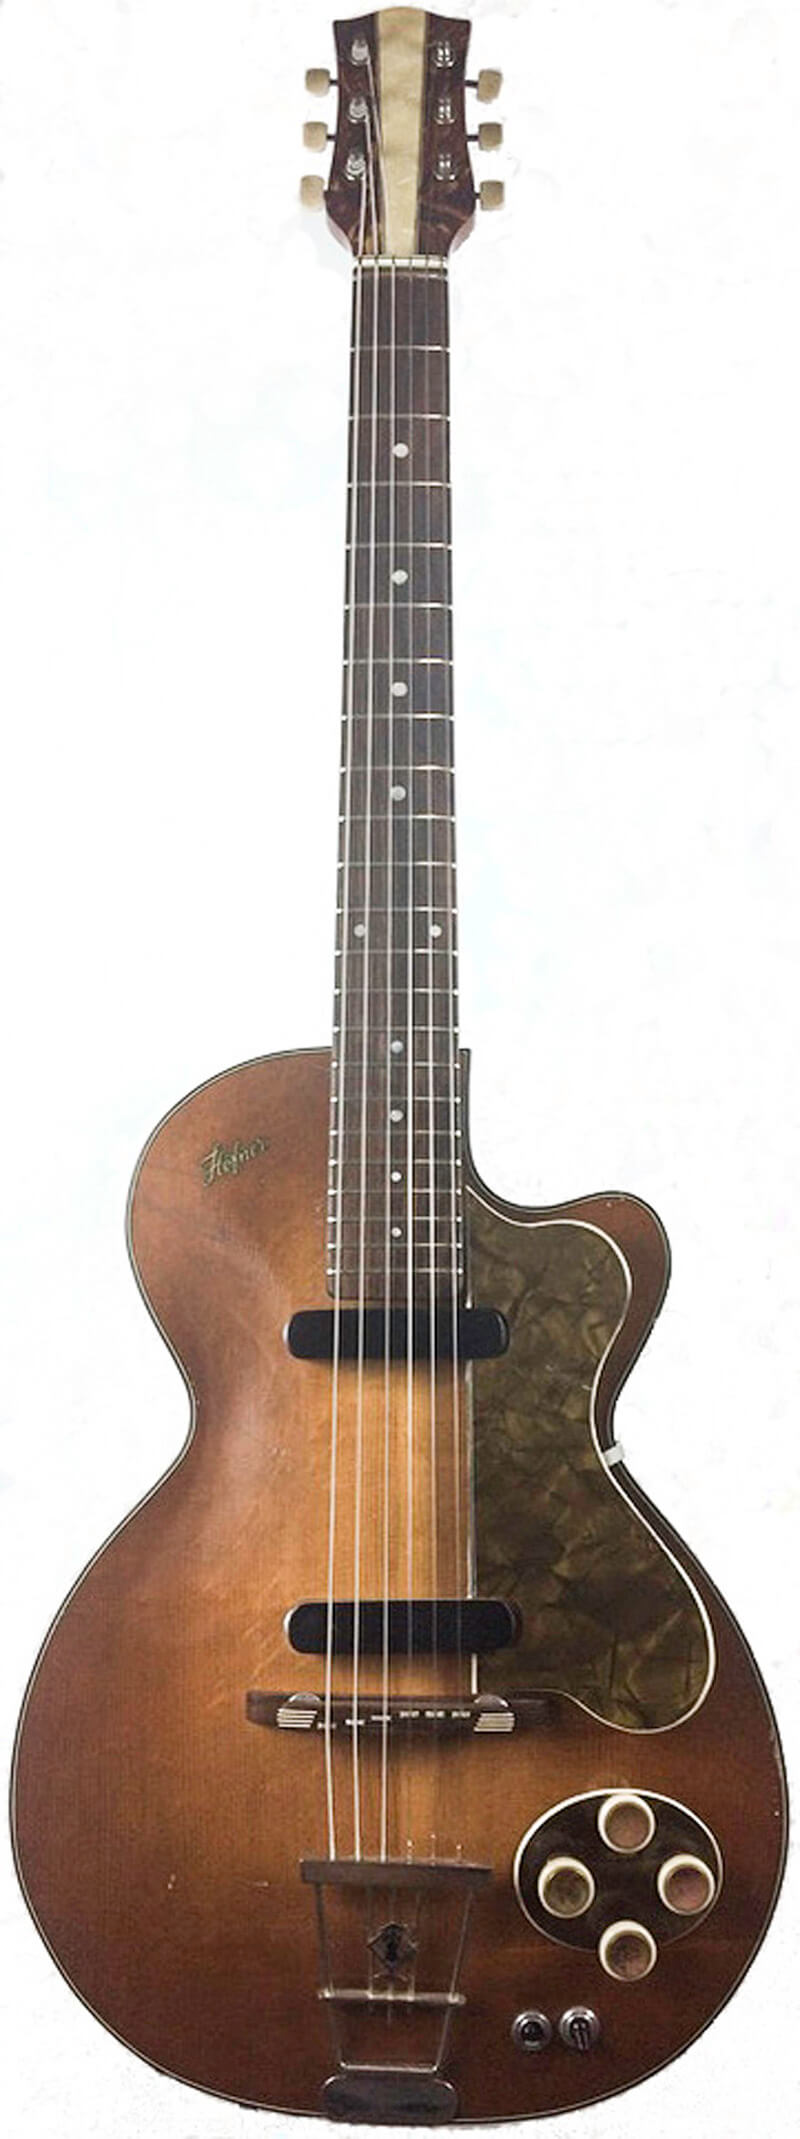 Vintage hofner guitars